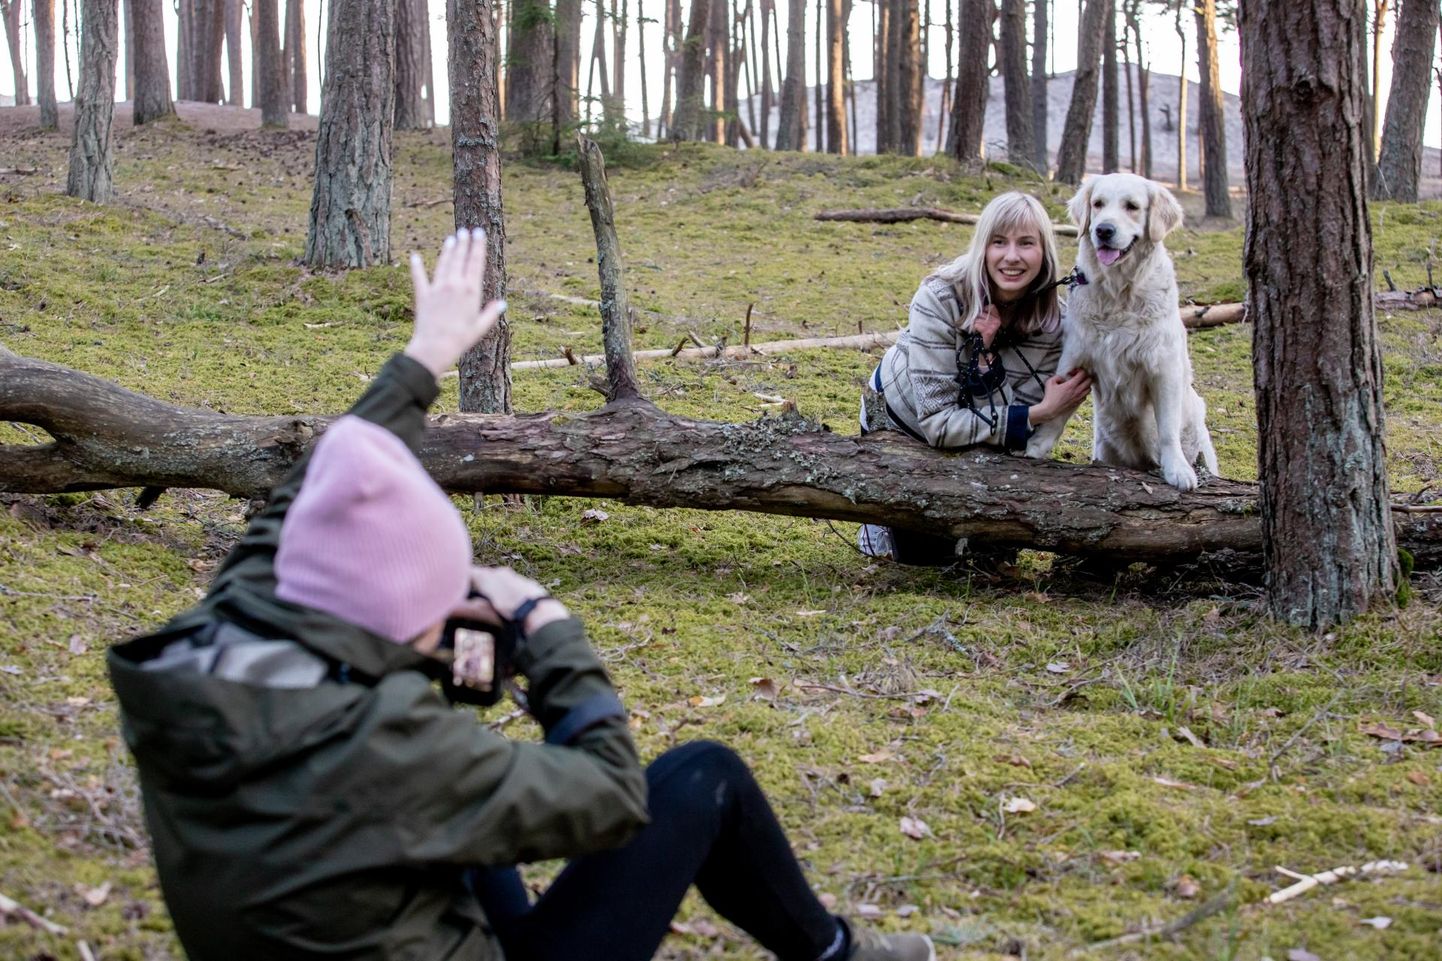 Aastakese koerte pildistamisele pühendunud Valeria Jegorova, ­kellele meeldib end proovile panna, leiab, et ilusasti istuvat koera ongi liiga lihtne jäädvustada.